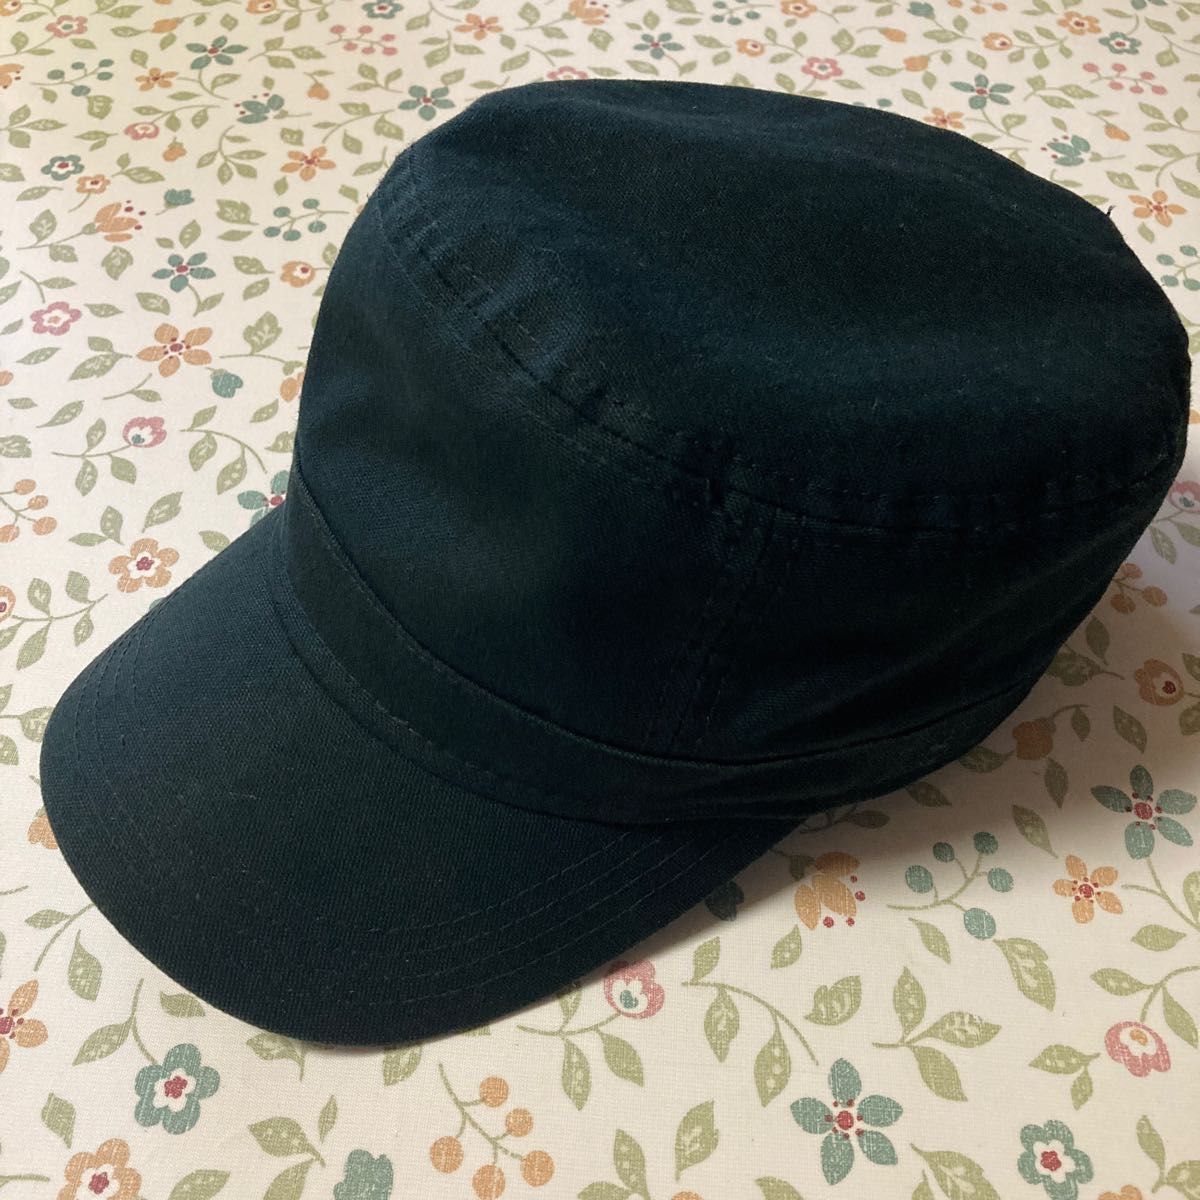 NEW ERA ニューエラ ワークキャッ プミリタリーキャップ 黒 ブラック 帽子 ７1/4 57.7㎝ レディース メンズ